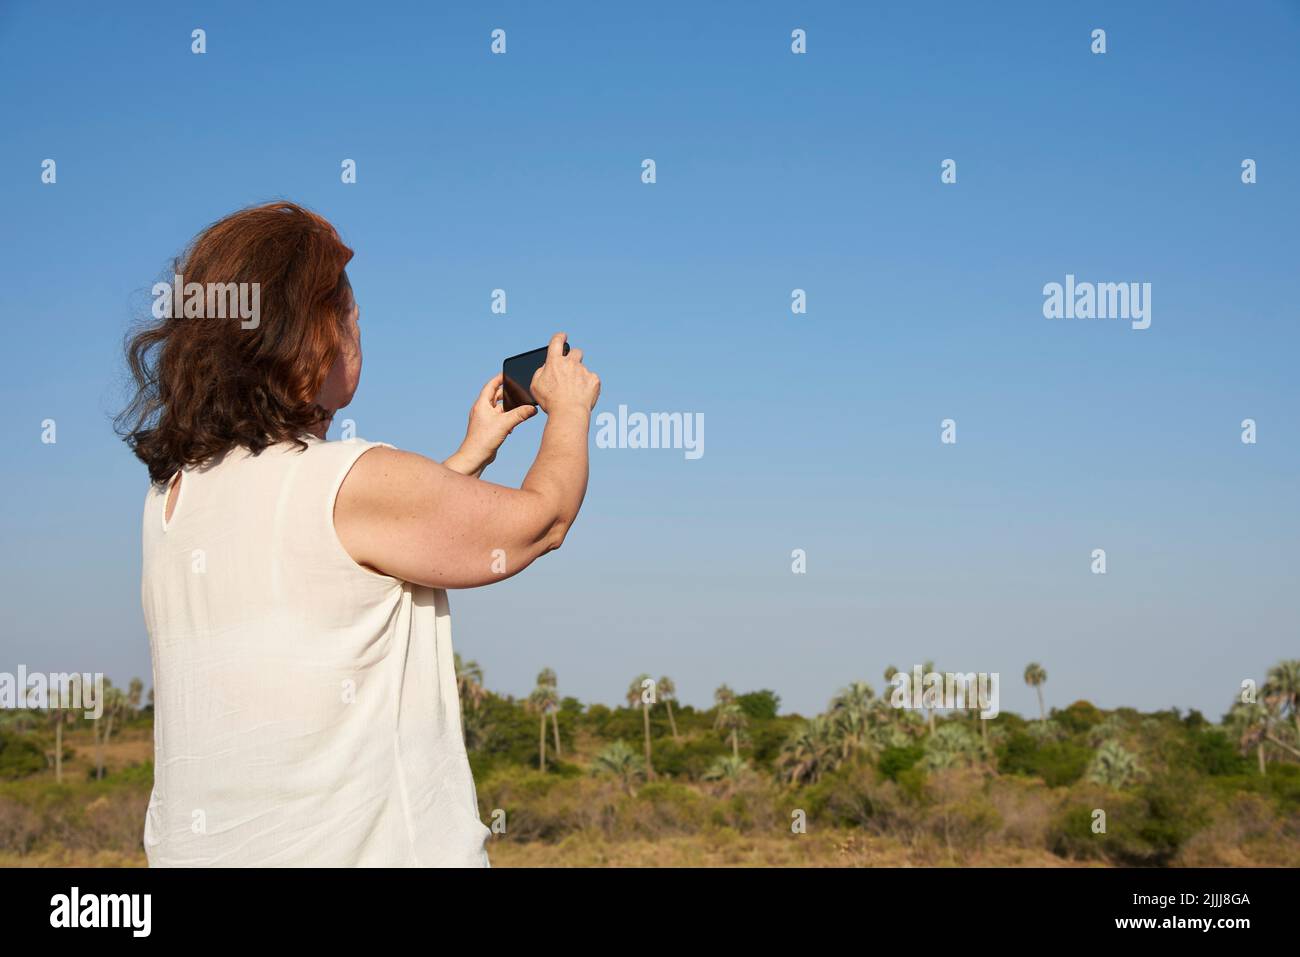 Rückansicht einer reifen Frau, die mit ihrem Telefon Fotos im El Palmar Nationalpark, Entre Rios, Argentinien, macht. Konzepte: Naturreisen, Urlaubsbilder Stockfoto